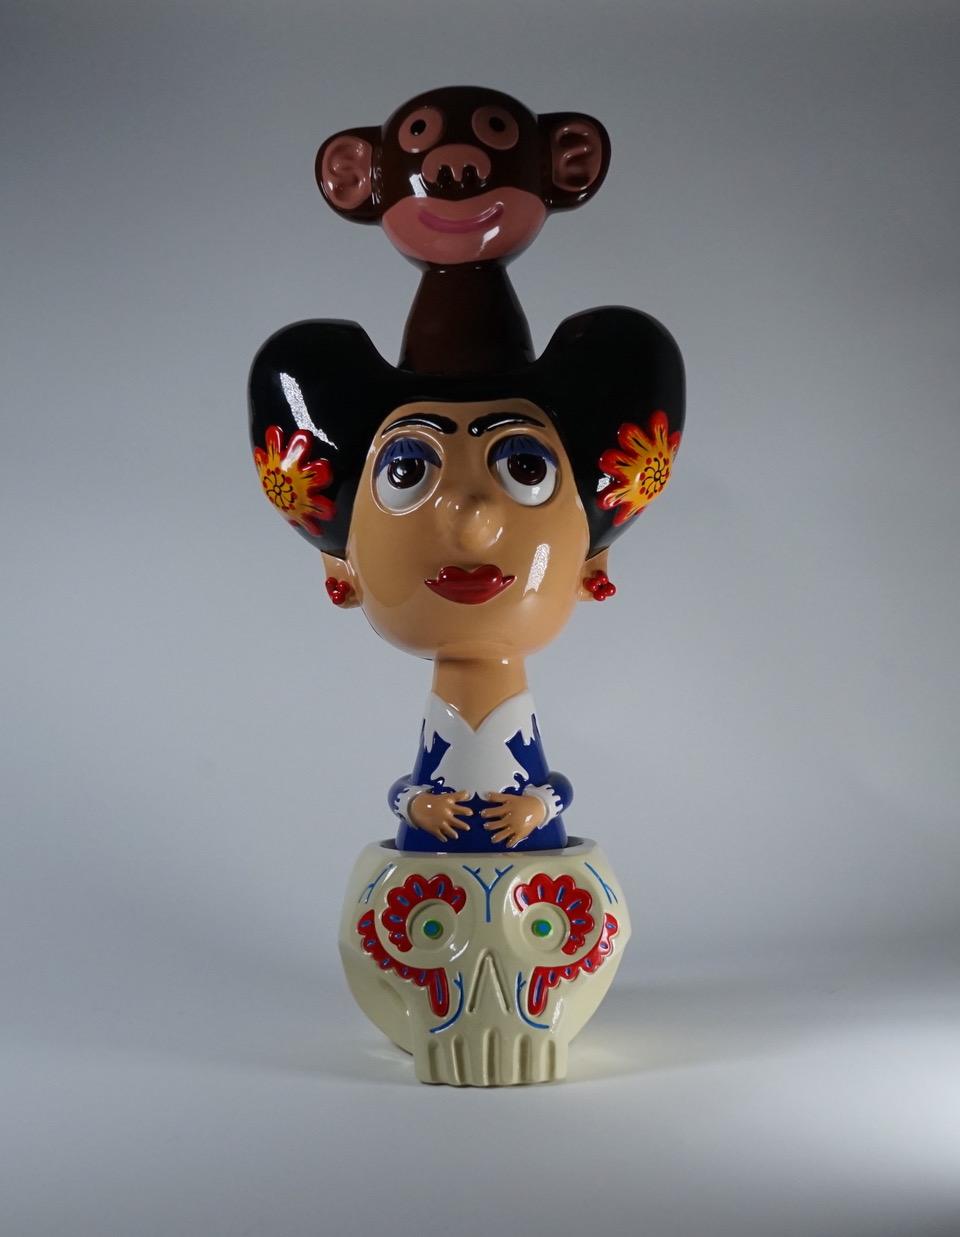 Frida Modell glasierte Keramikskulptur aus der neuen Kollektion École d'Art s von Massimo Giacon für Superego Editions. Die Skulptur besteht aus drei trennbaren Elementen. Limitierte Auflage von 50 Stück. Signiert und nummeriert.

Biografie
Massimo